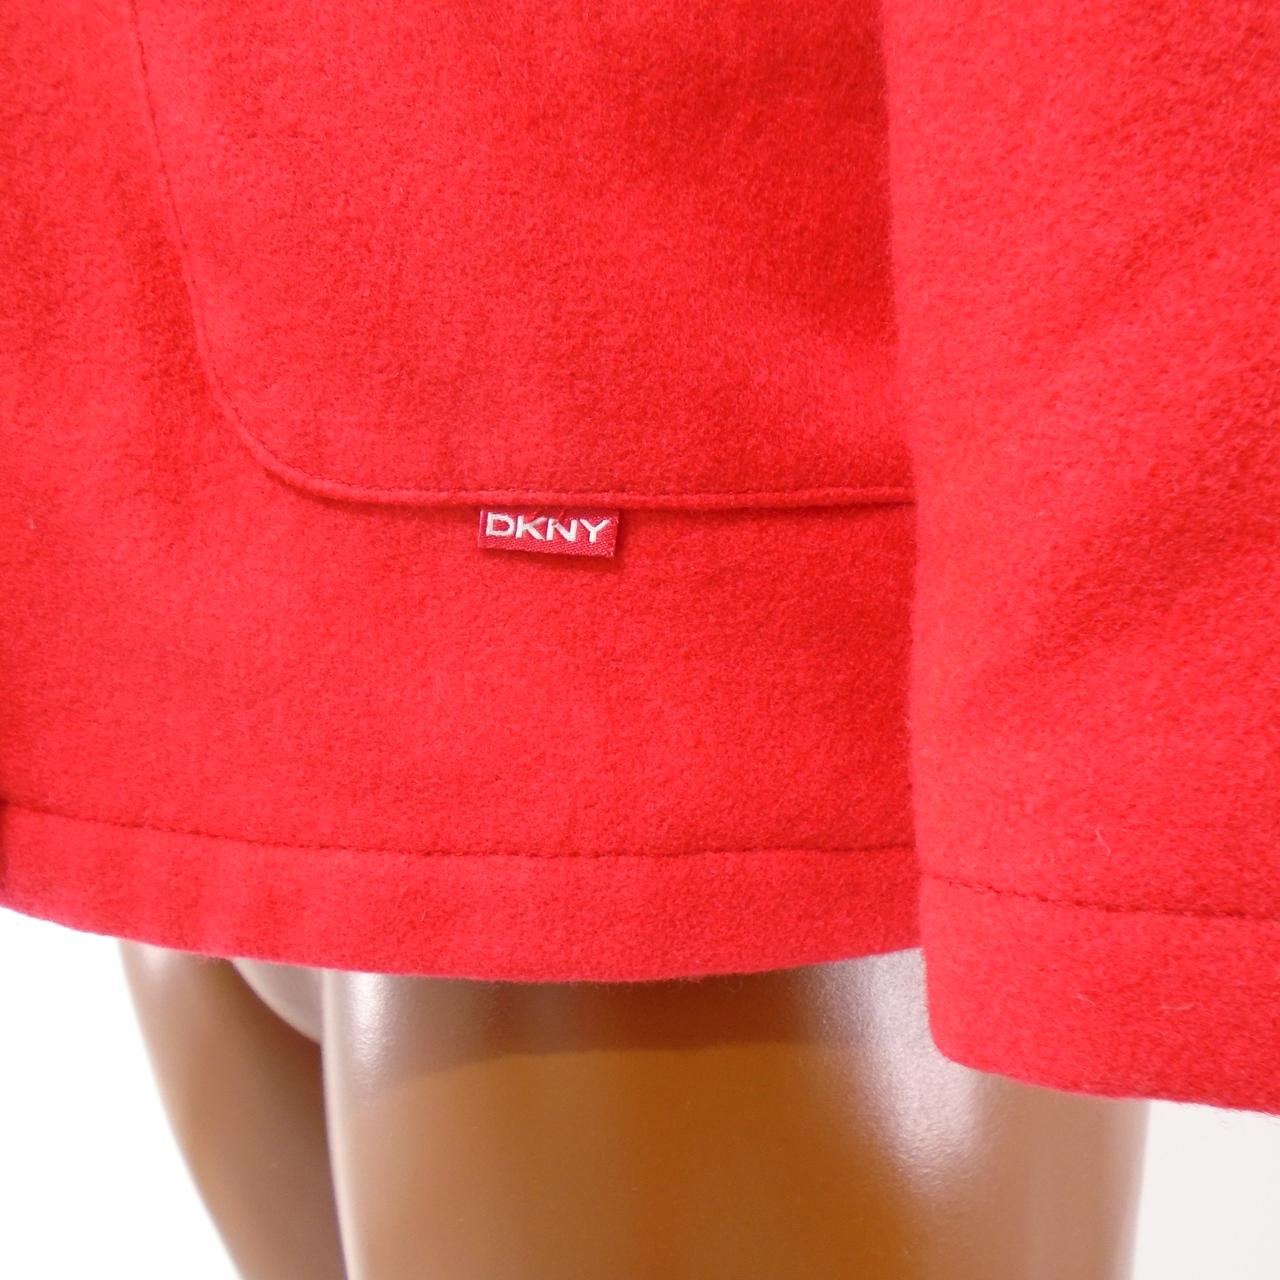 Abrigo de Mujer DKNY. Rojo. S. Usado. Bien